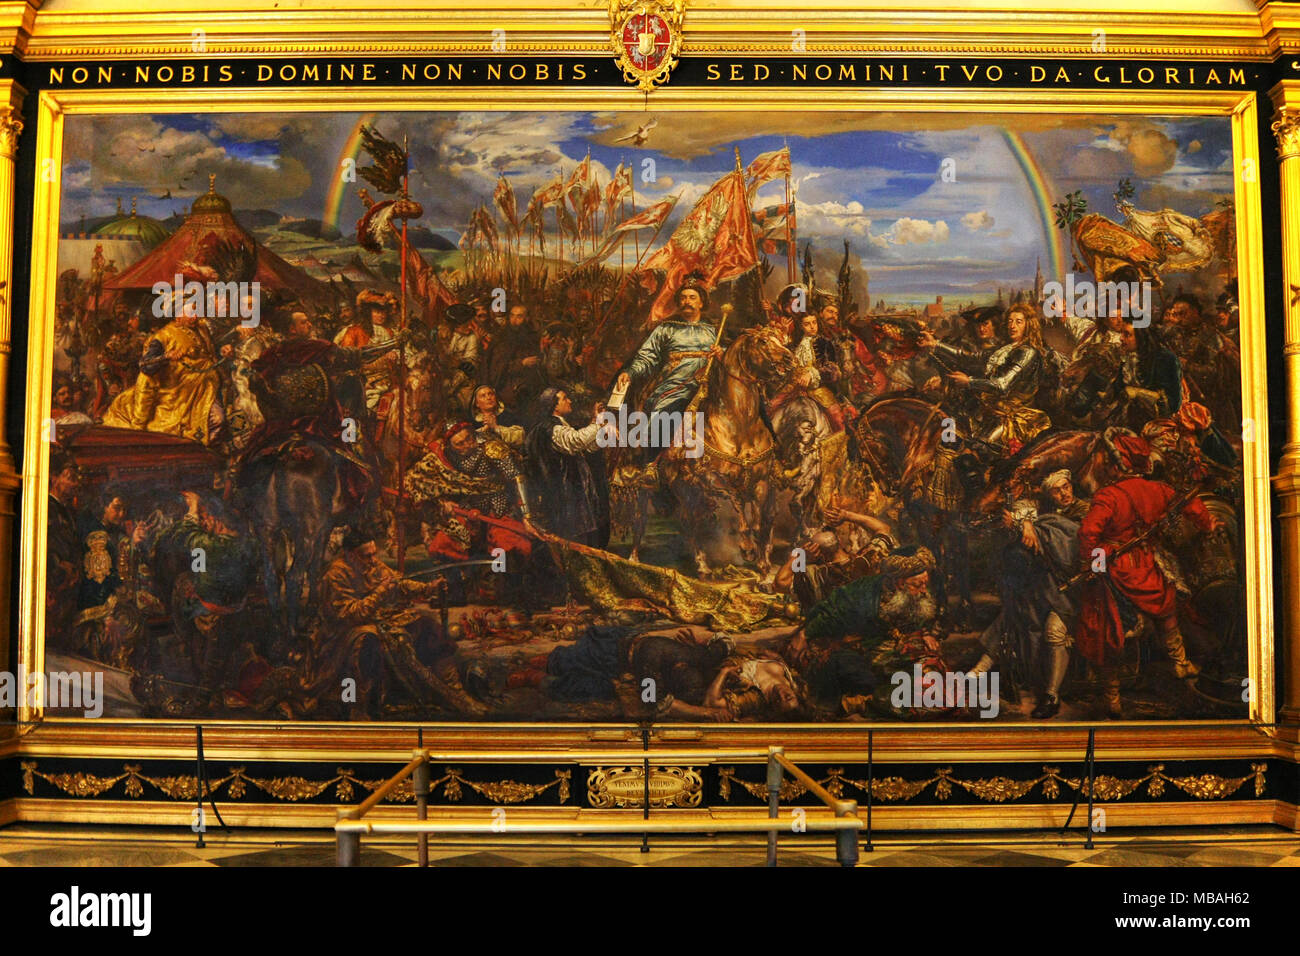 Roma,Italia - Giugno 17,2011: Museo del Vaticano. La verniciatura del Re Jan Sobieski a Vienna durante la guerra con i Turchi. Dipinto di Jan Matejko. Foto Stock